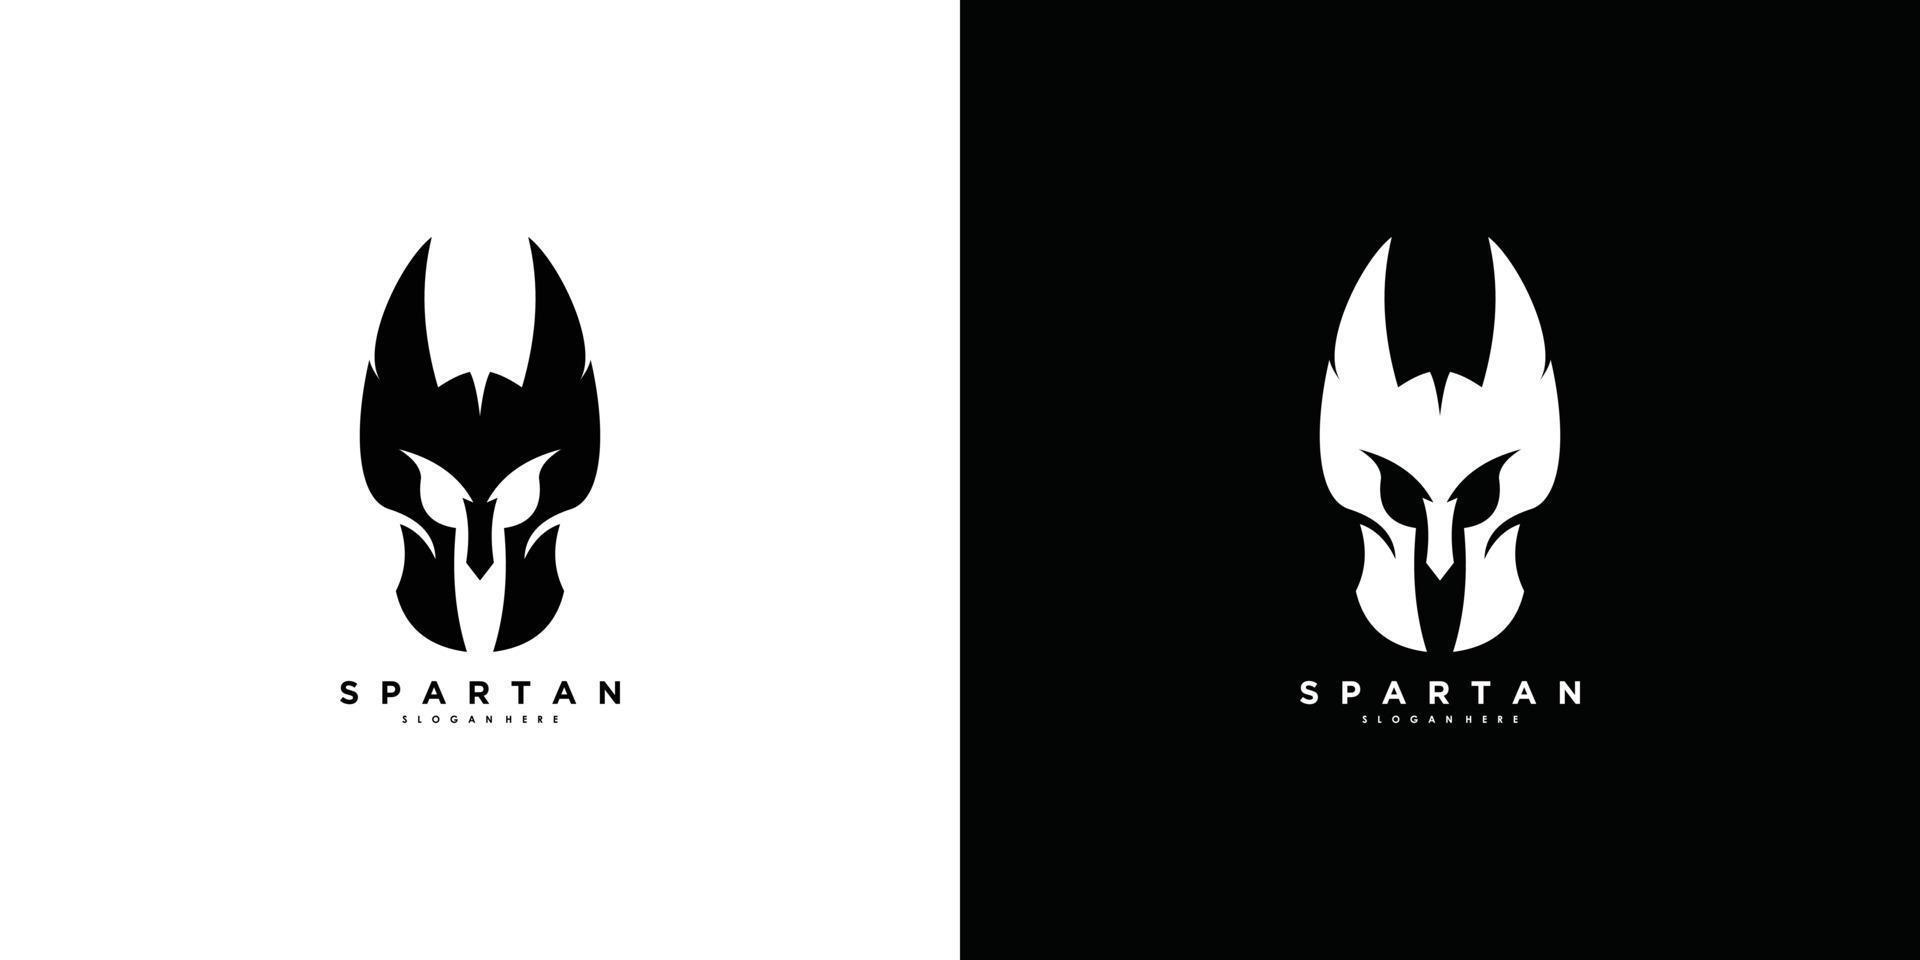 Spartan logo design vector with modern and creative concept